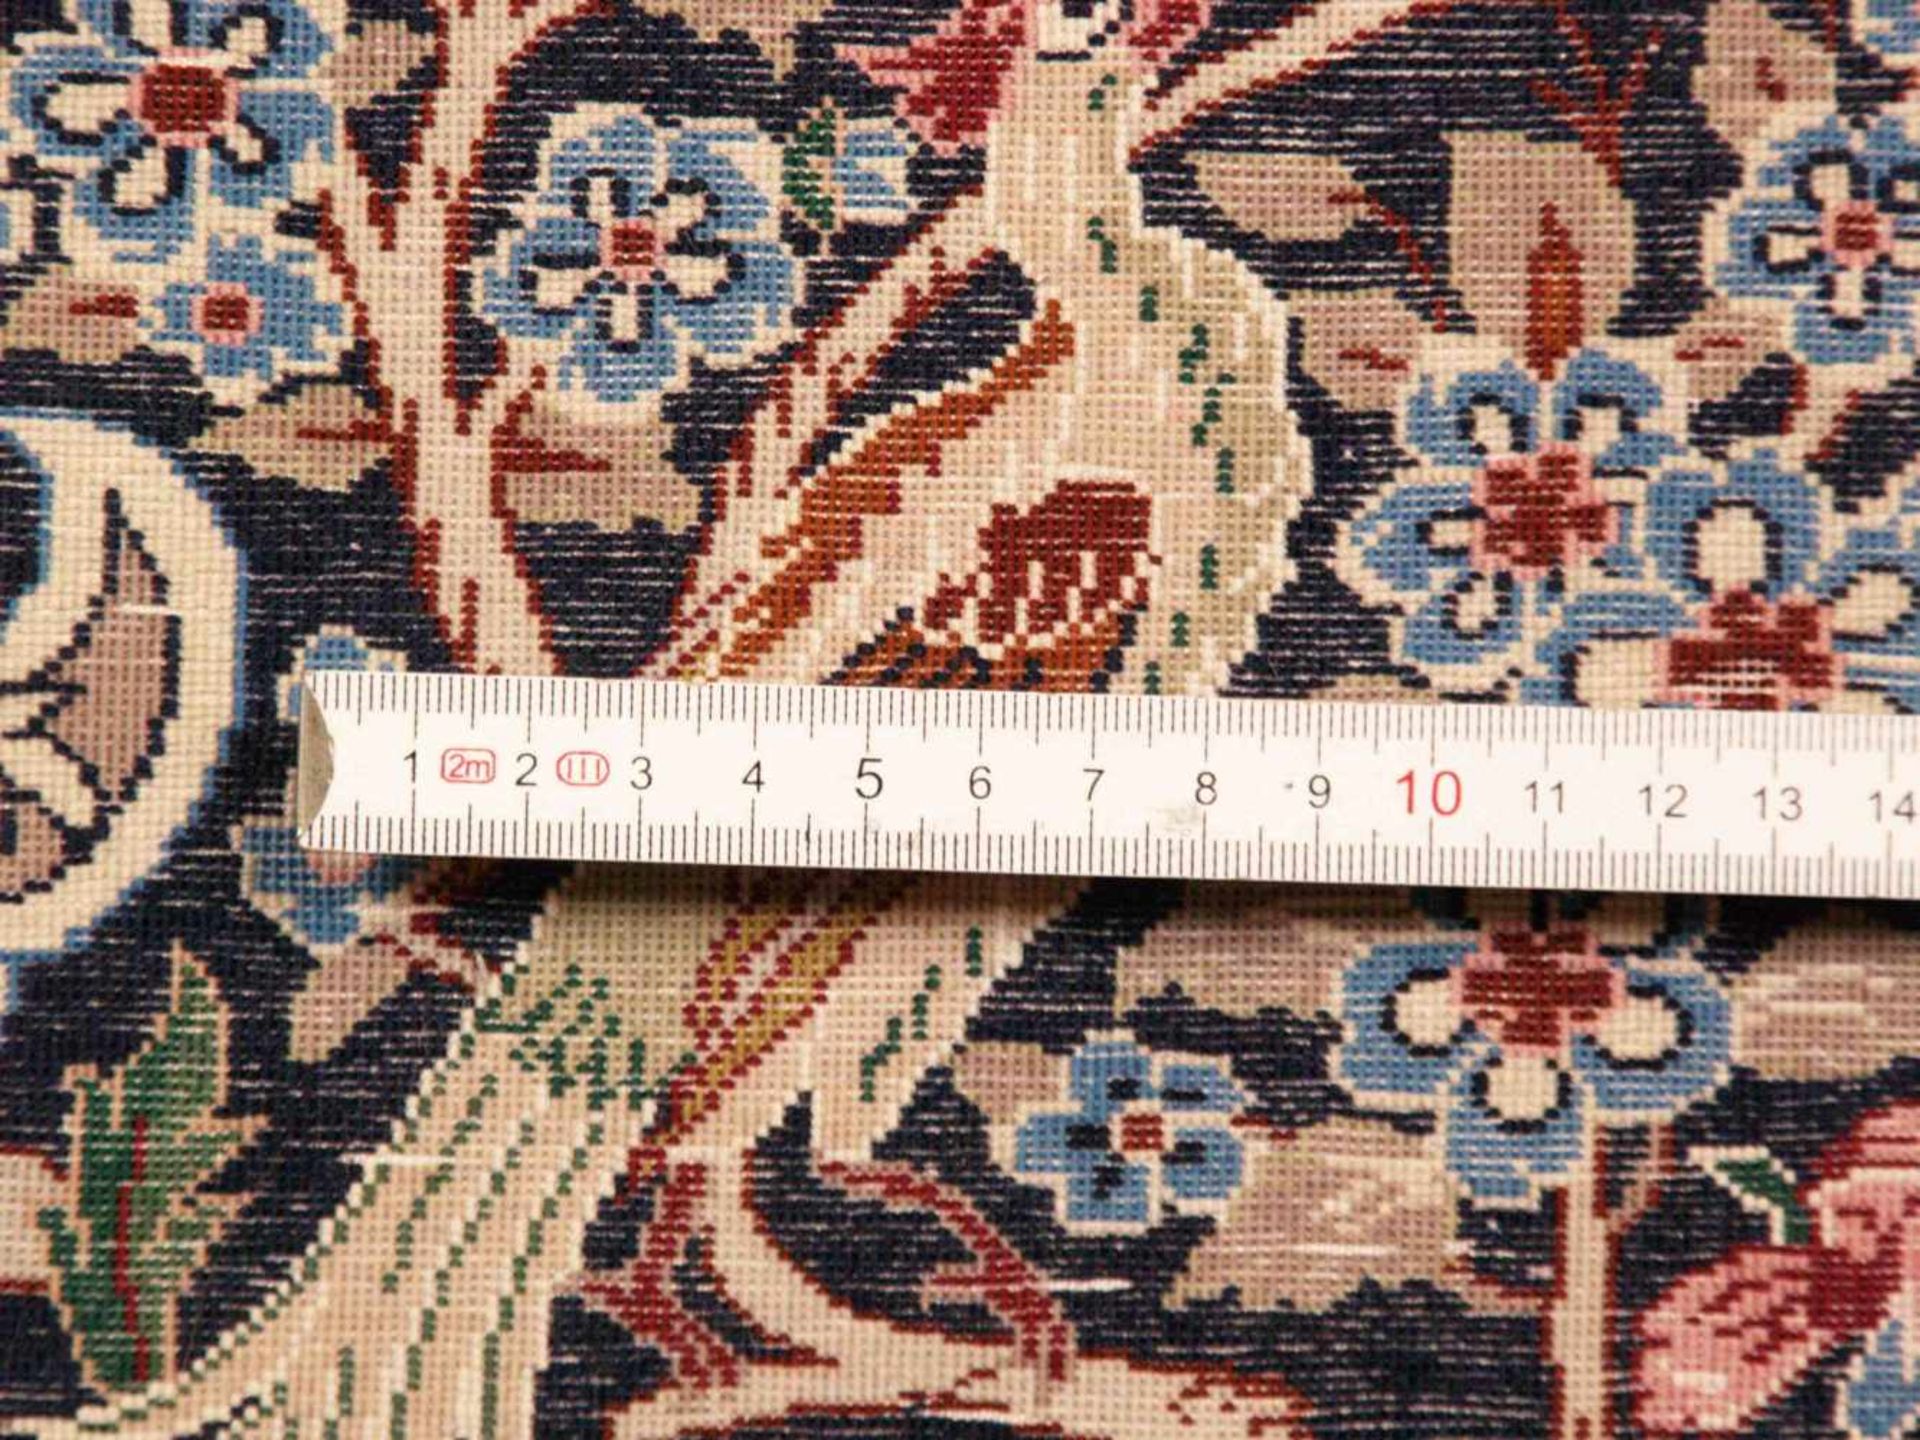 Orientteppich - Wolle und Seide, blaugrundig, zentrale florale Kartusche, gerahmt von Vögeln, - Bild 11 aus 11